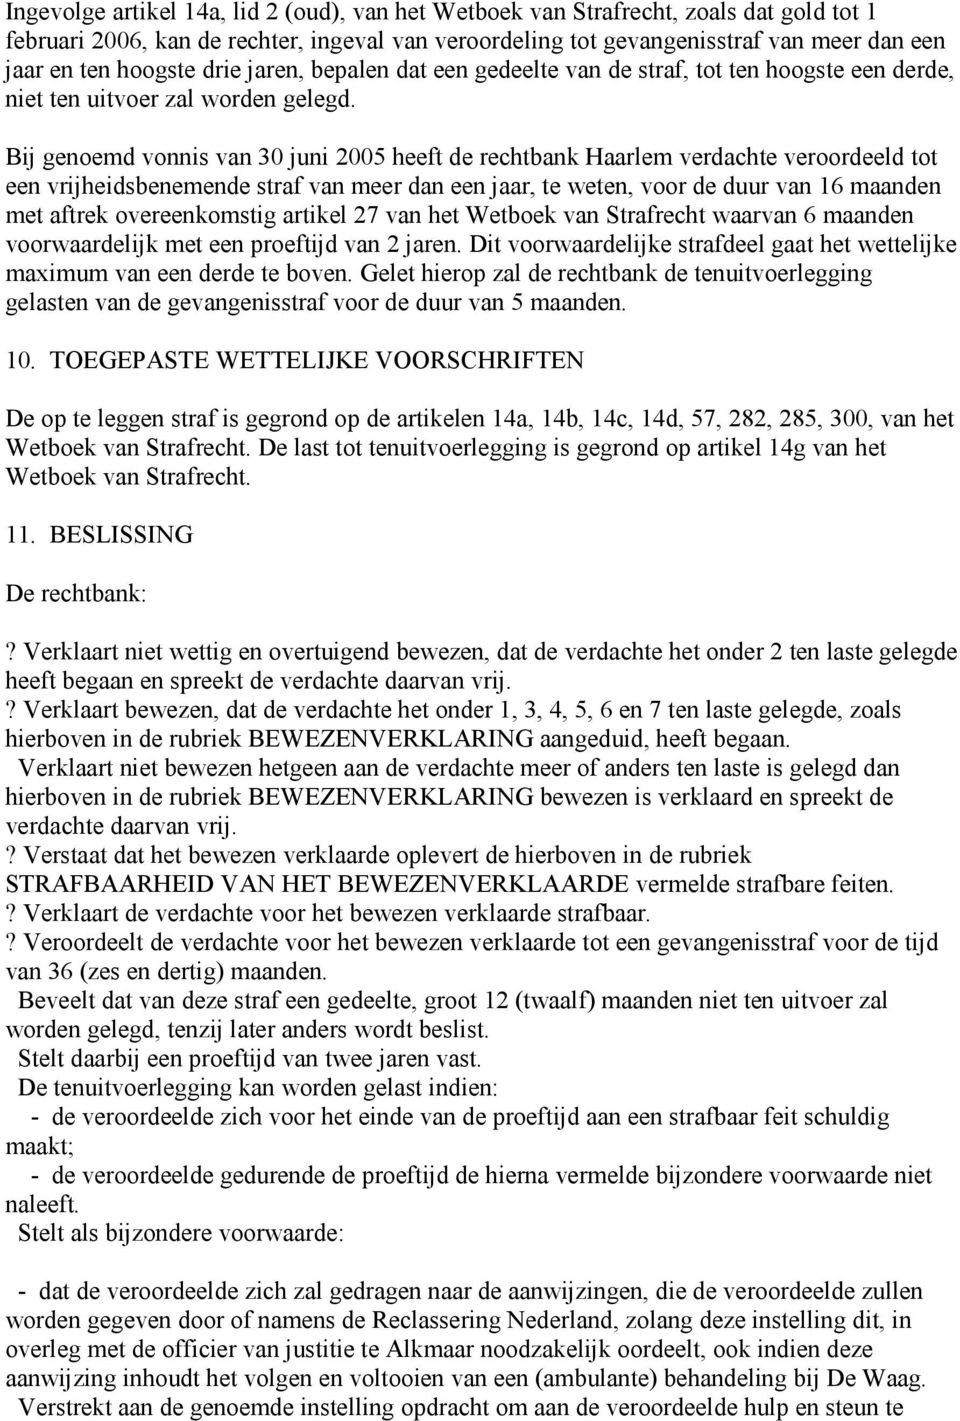 Bij genoemd vonnis van 30 juni 2005 heeft de rechtbank Haarlem verdachte veroordeeld tot een vrijheidsbenemende straf van meer dan een jaar, te weten, voor de duur van 16 maanden met aftrek